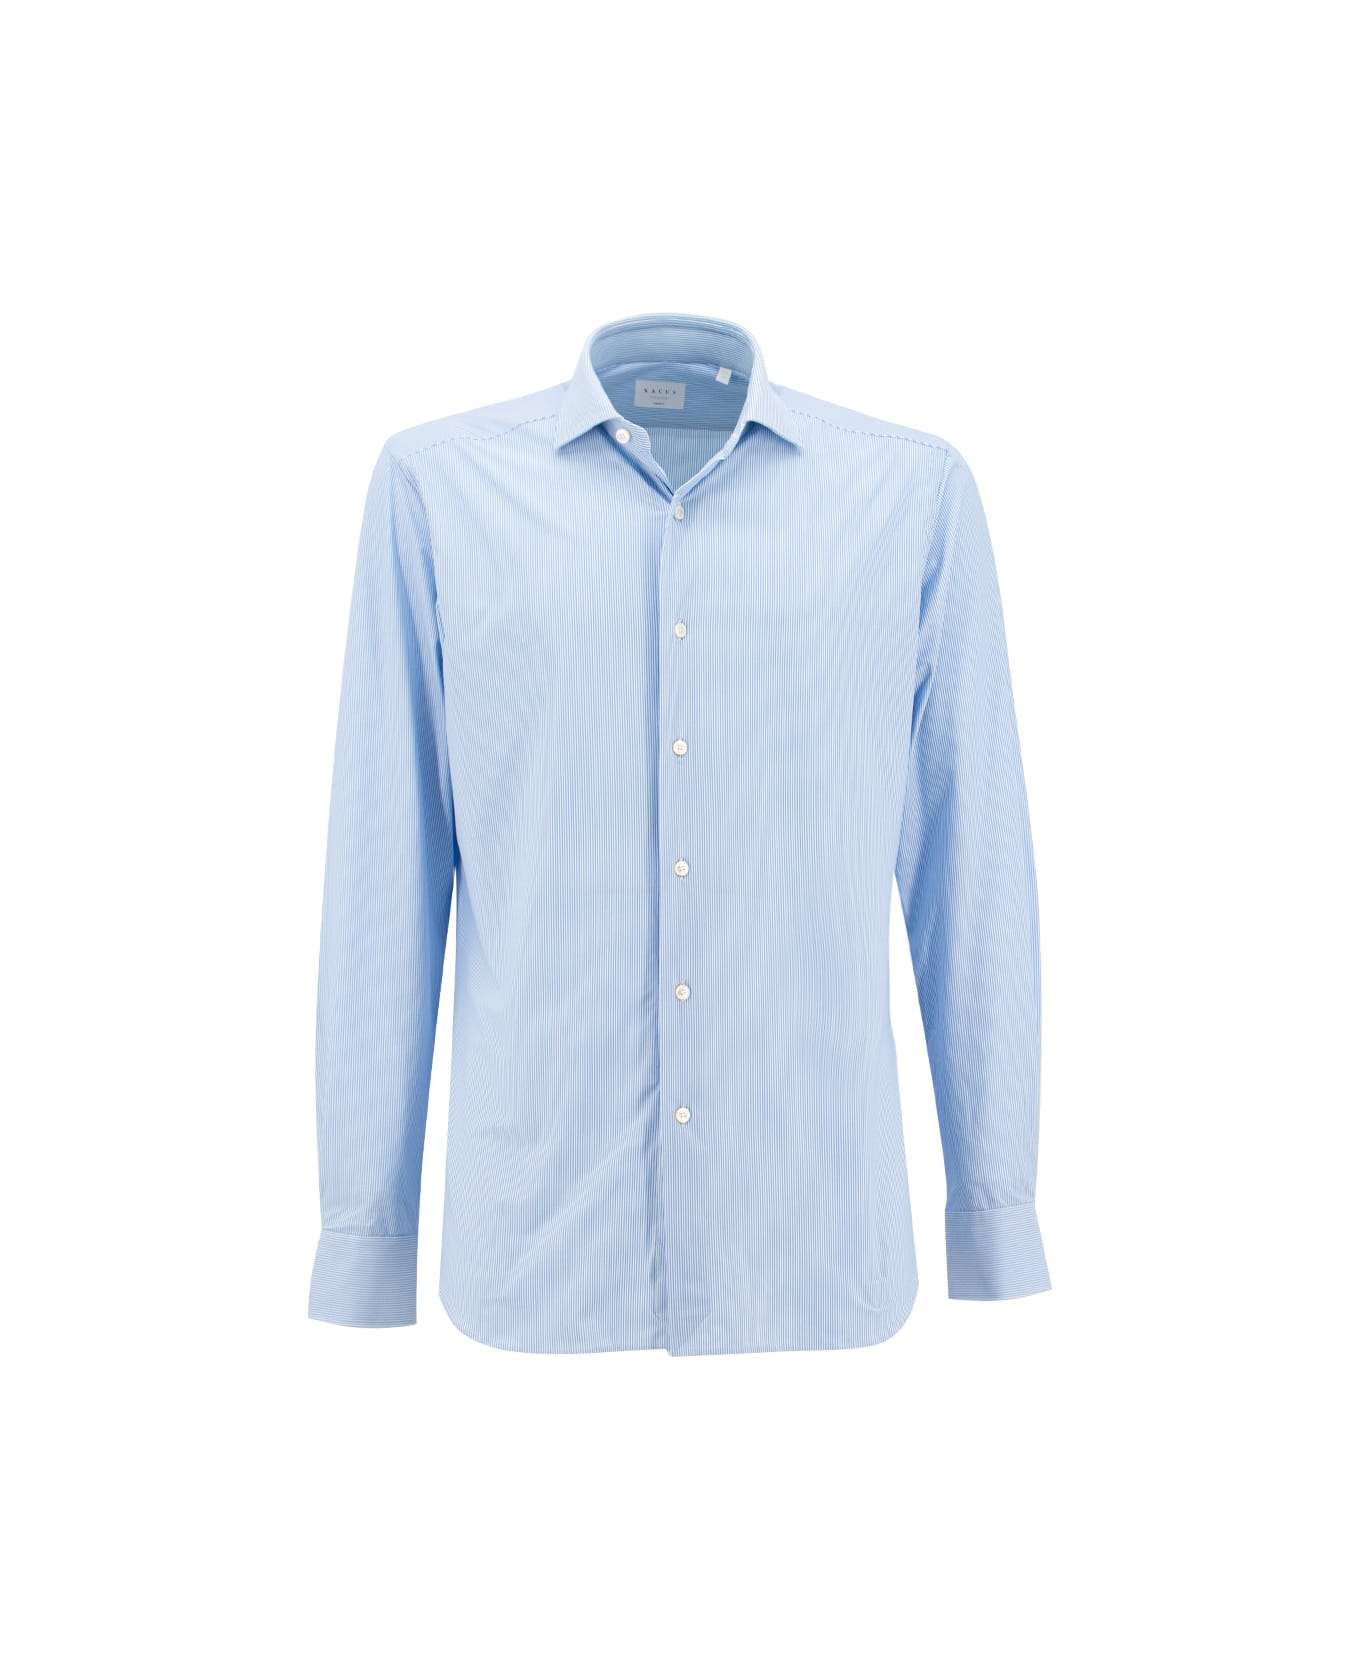 Xacus Shirt - STRIPE BLUE  WHITE